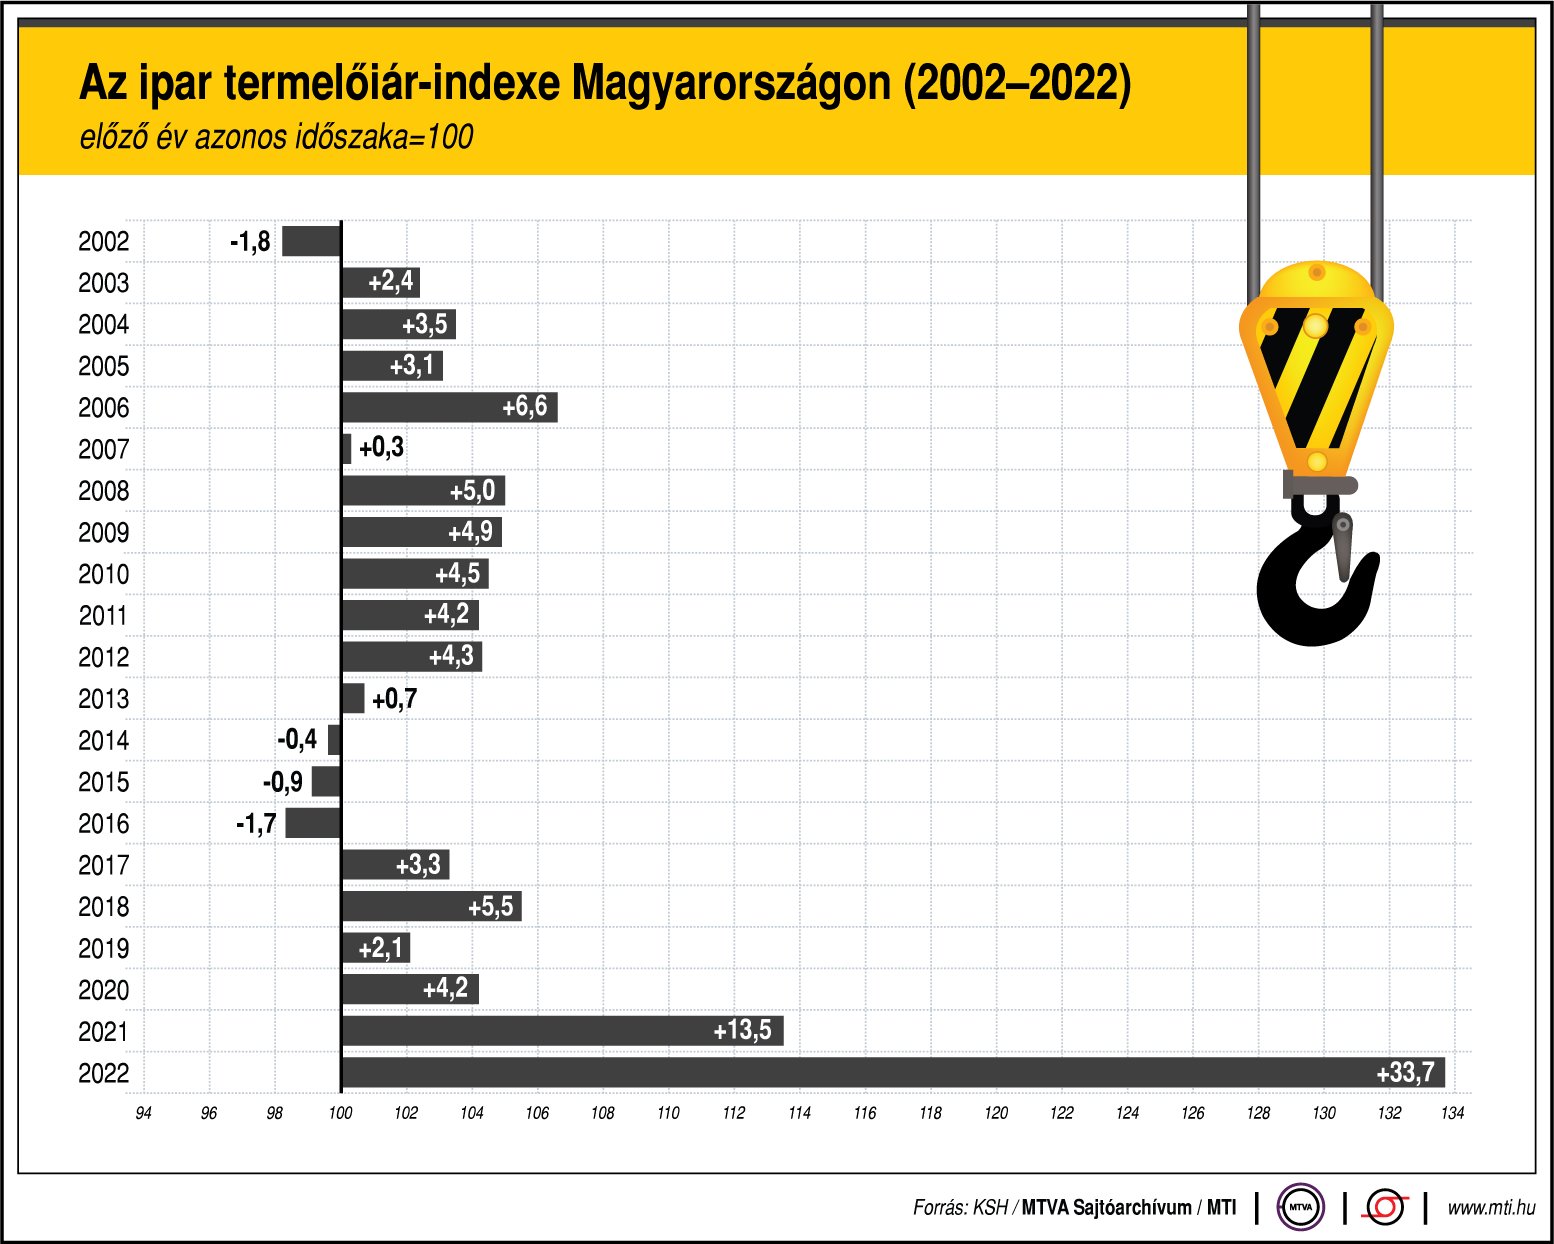 Az ipar termelőiár-indexe Magyarországon 2002-2022